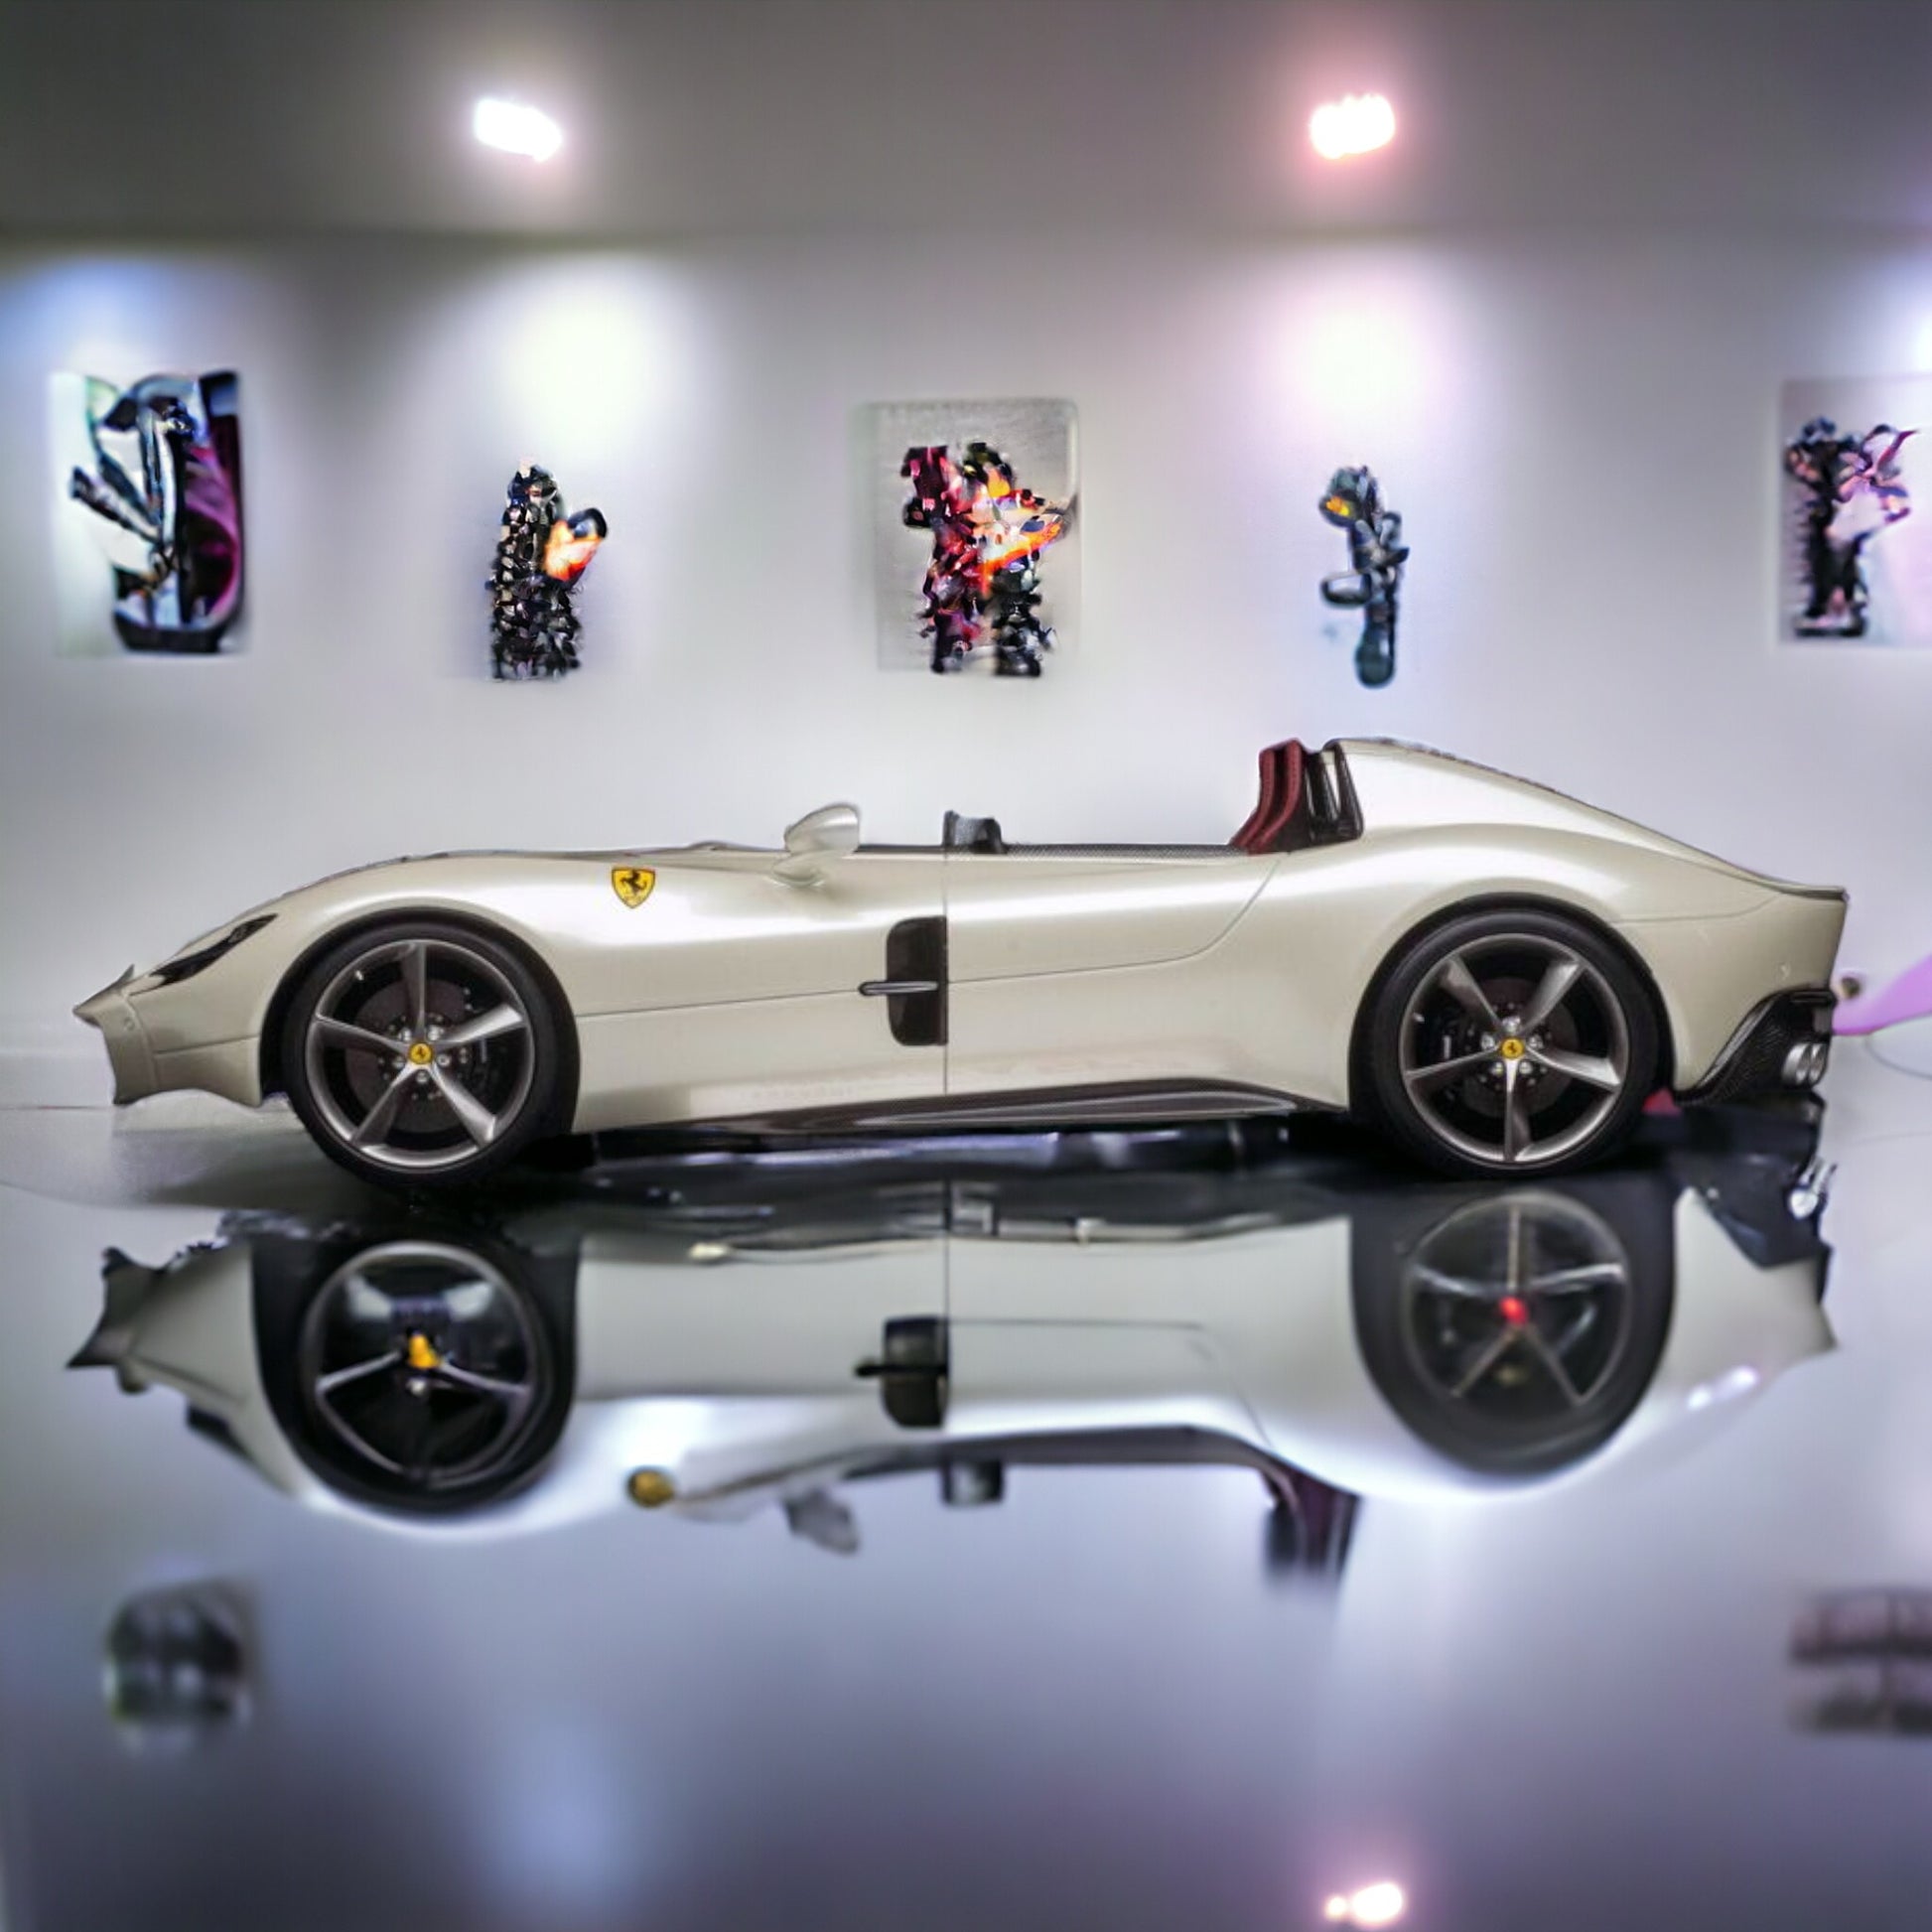 1/18 Diecast Ferrari Monza SP2 White BBR Scale Model Car|Sold in Dturman.com Dubai UAE.